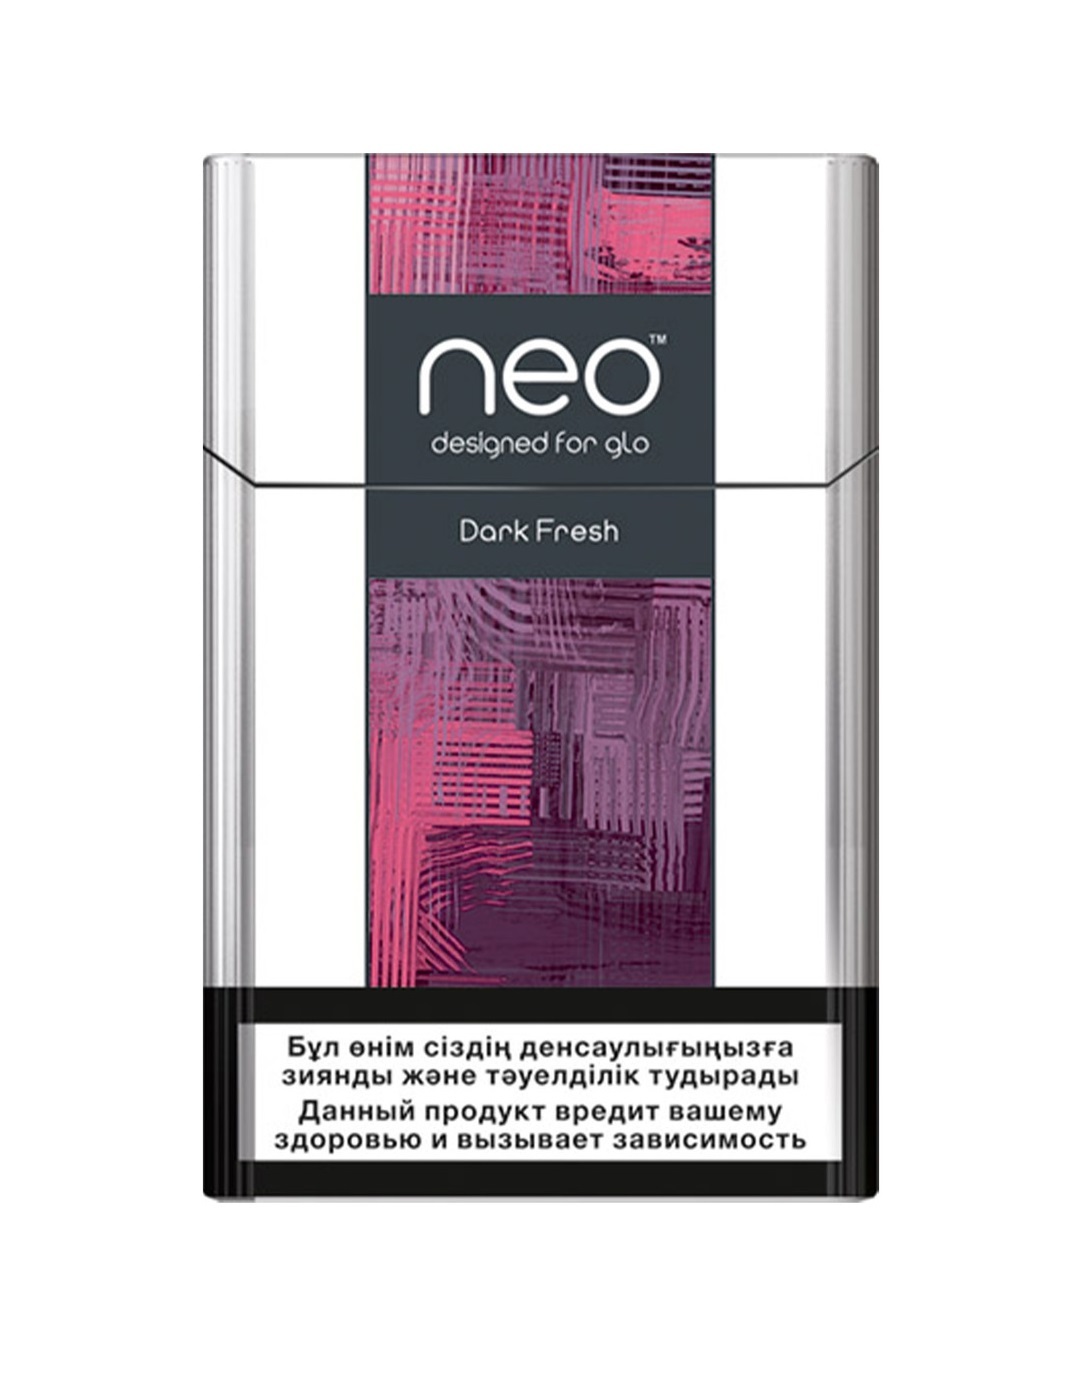 Neo стики купить. Стики Neo Dark Fresh. Стики Нео для гло. Сигареты Neo для Glo.